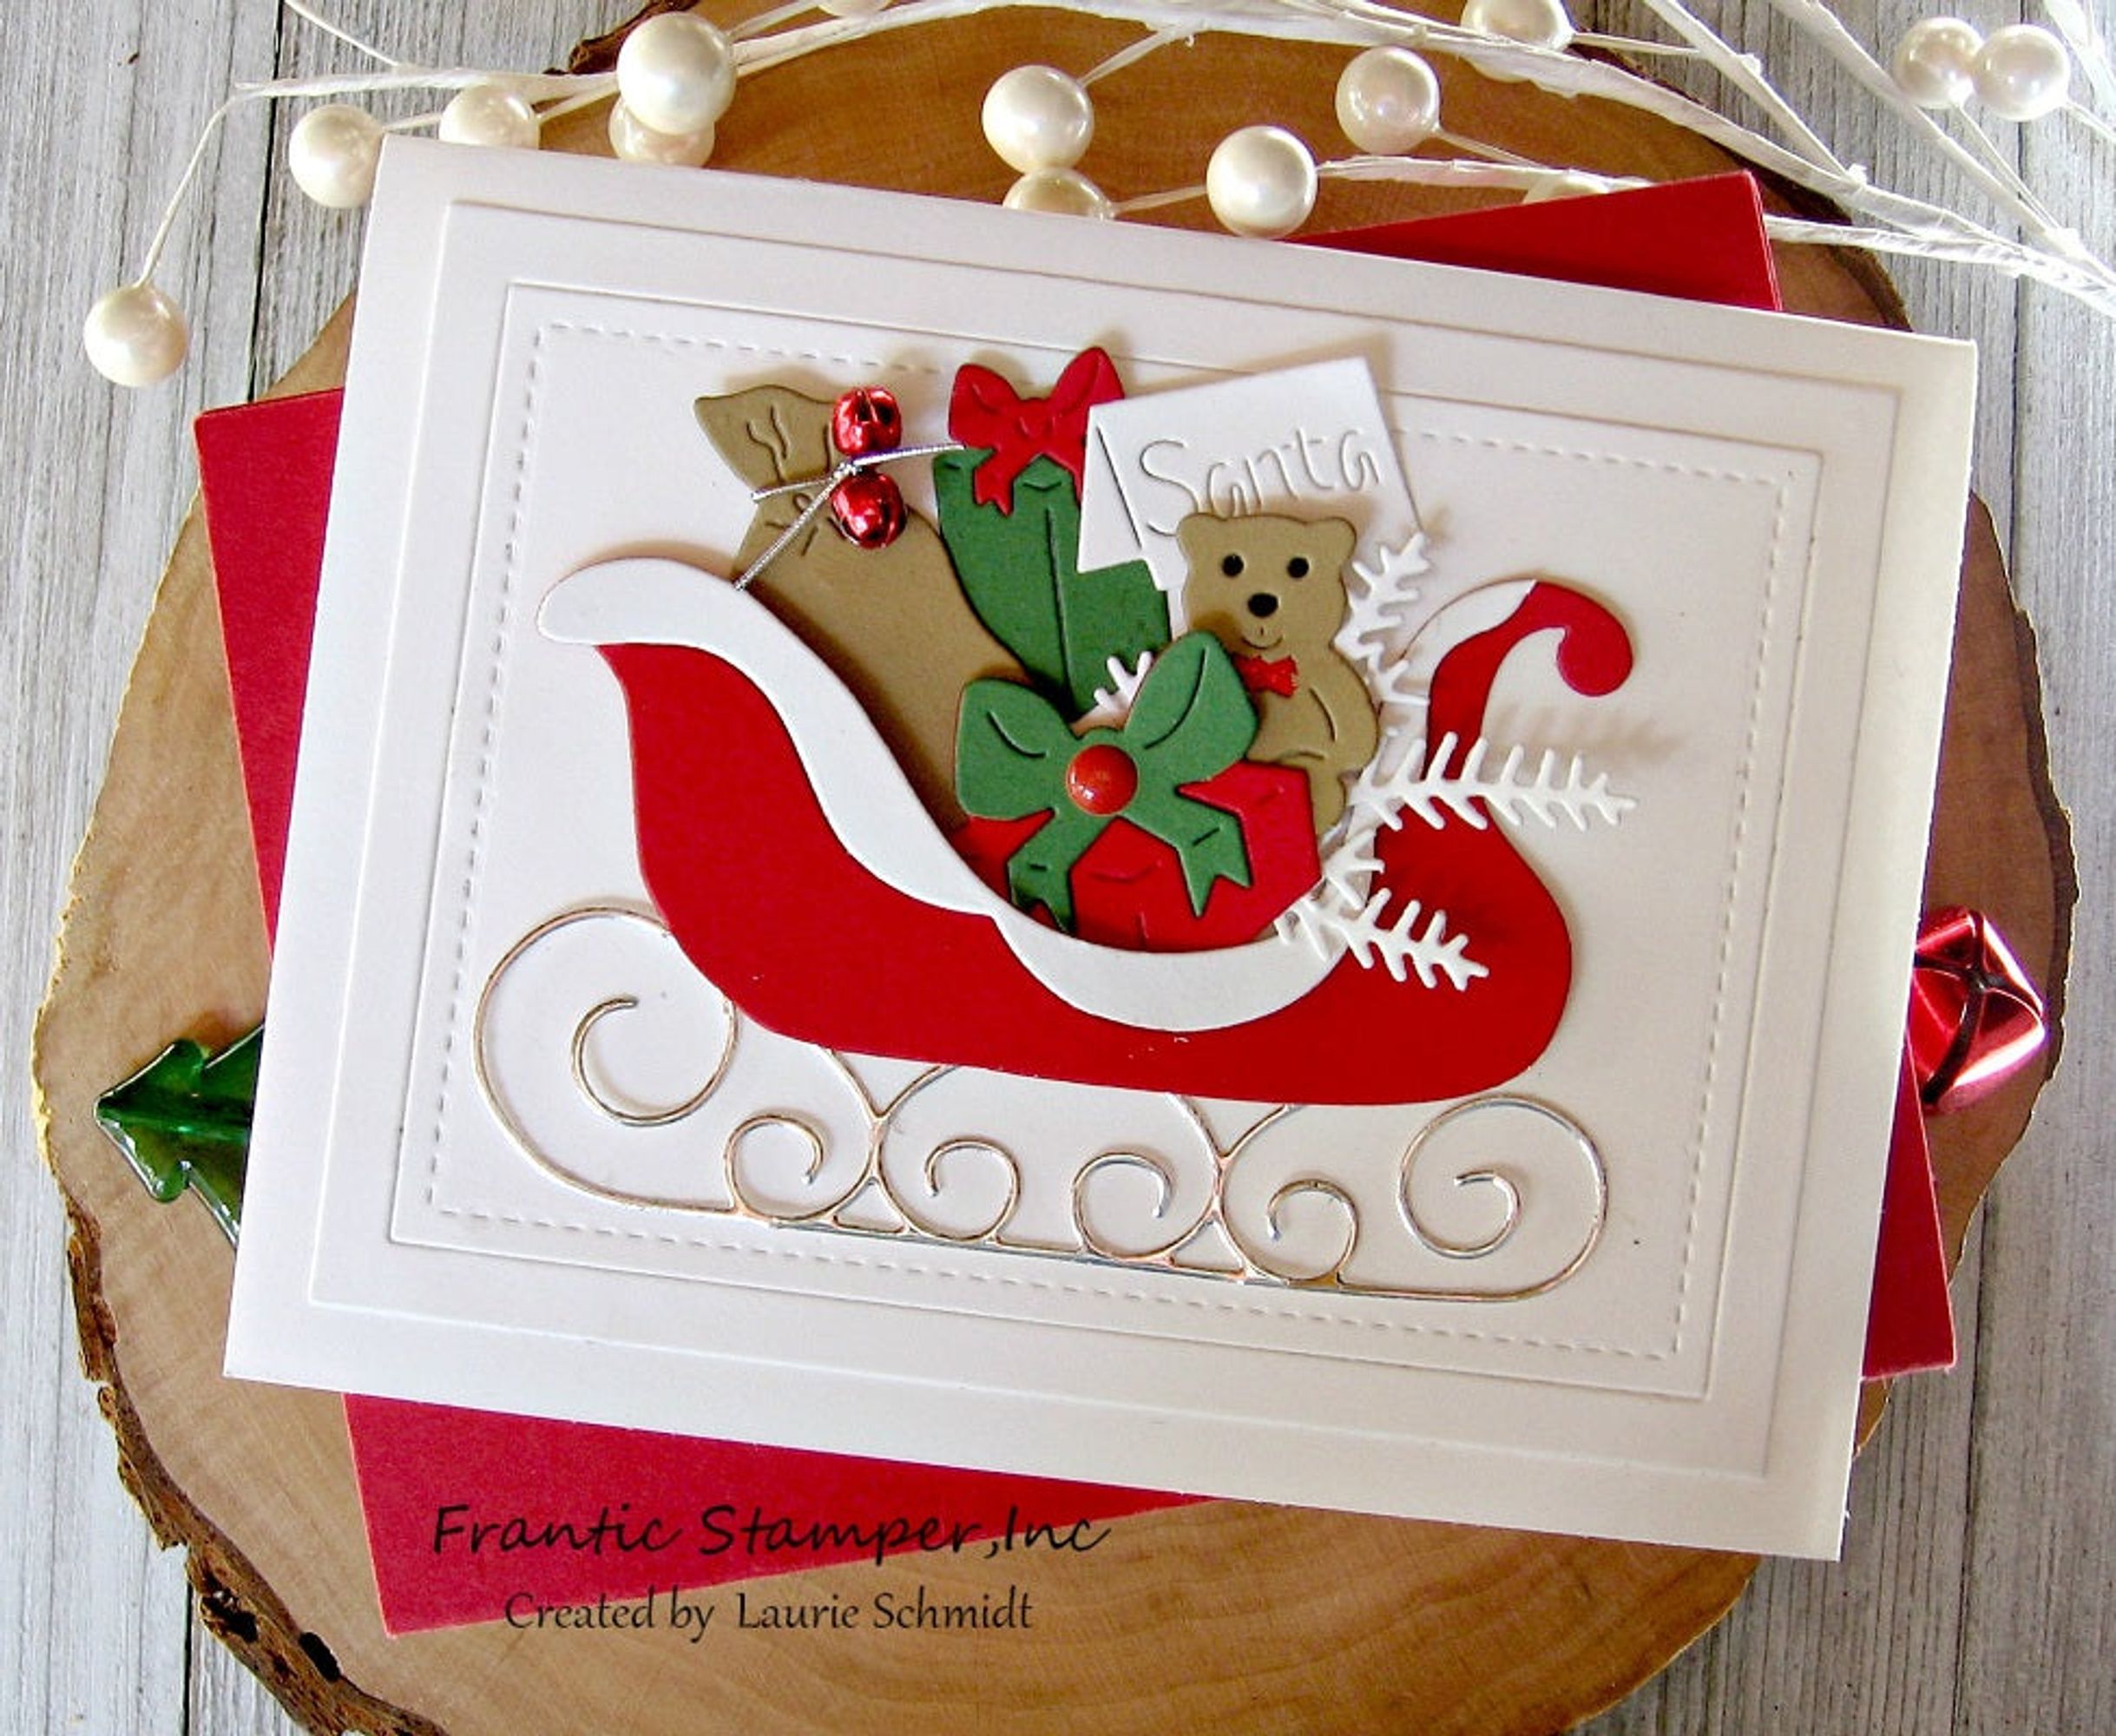 Frantic Stamper Precision Die - Cookies for Santa